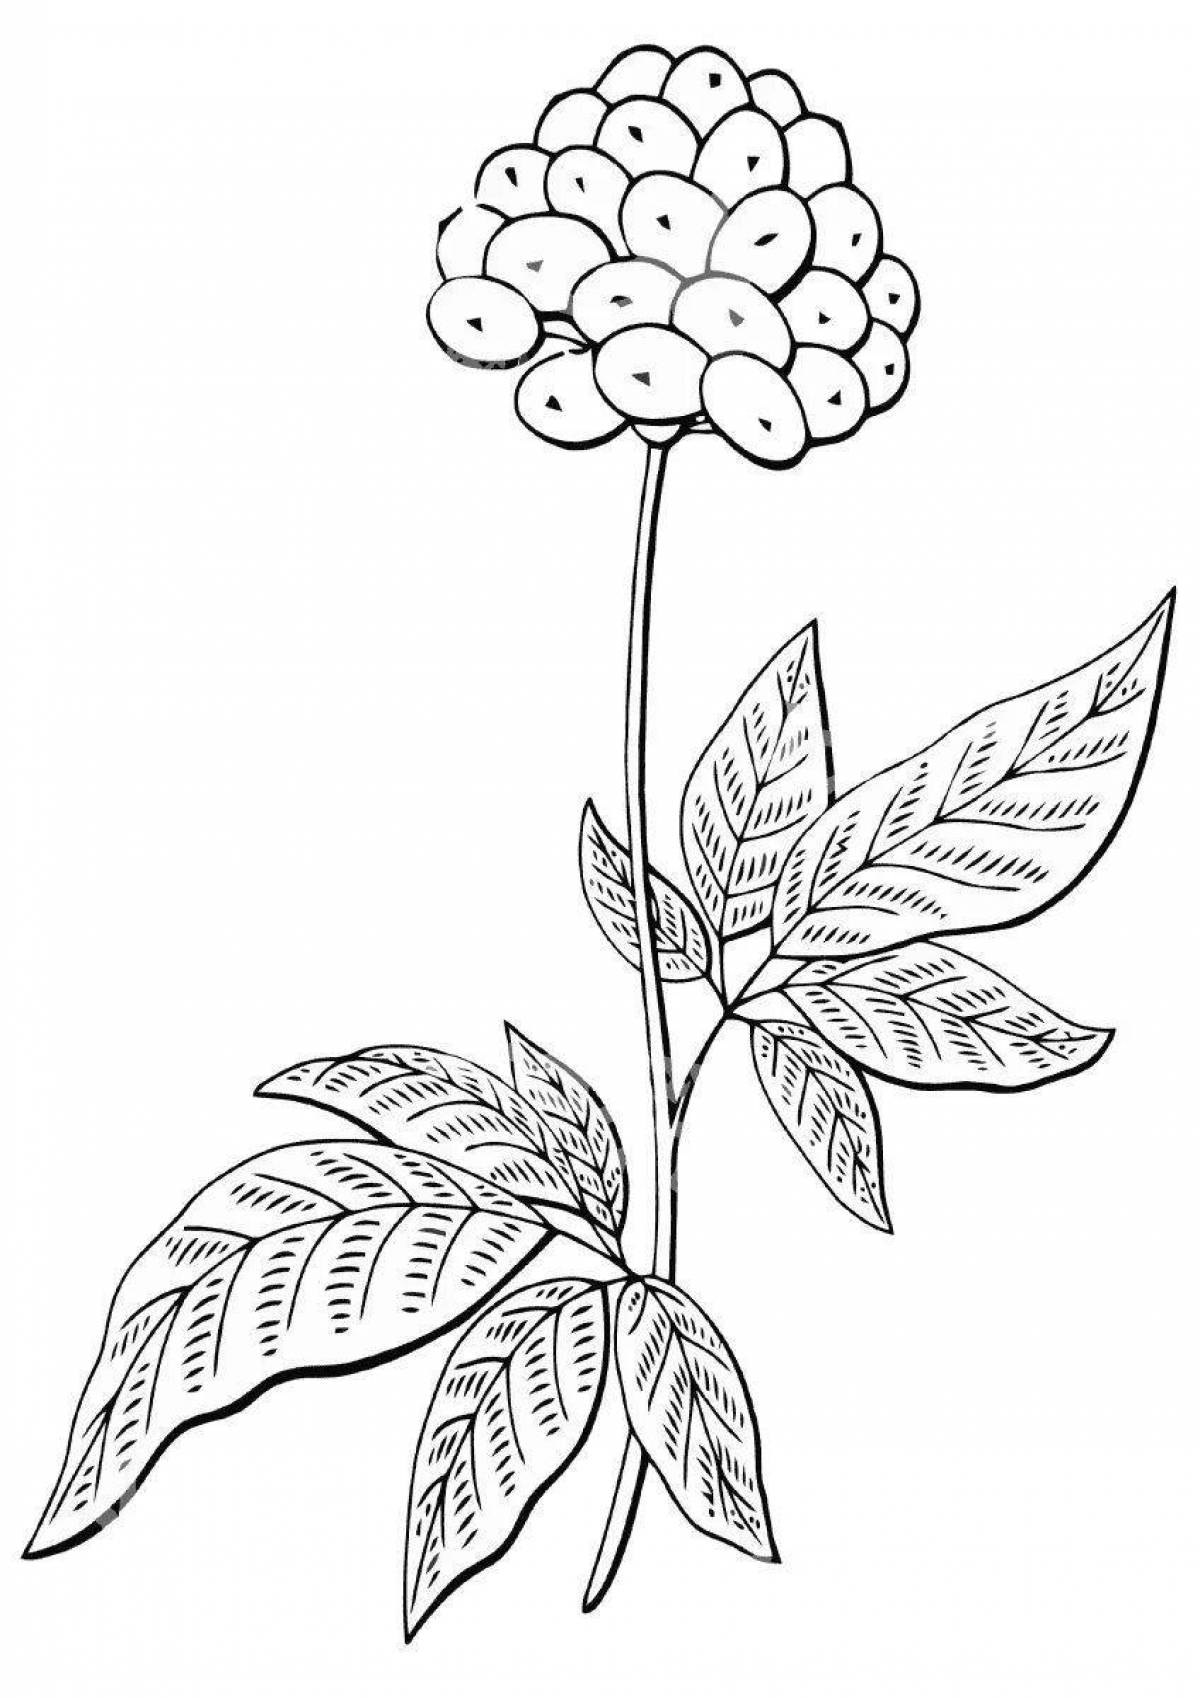 Ядовитые растения, Ч.1 | Ботанические рисунки, Ботанические иллюстрации, Ядовитые растения